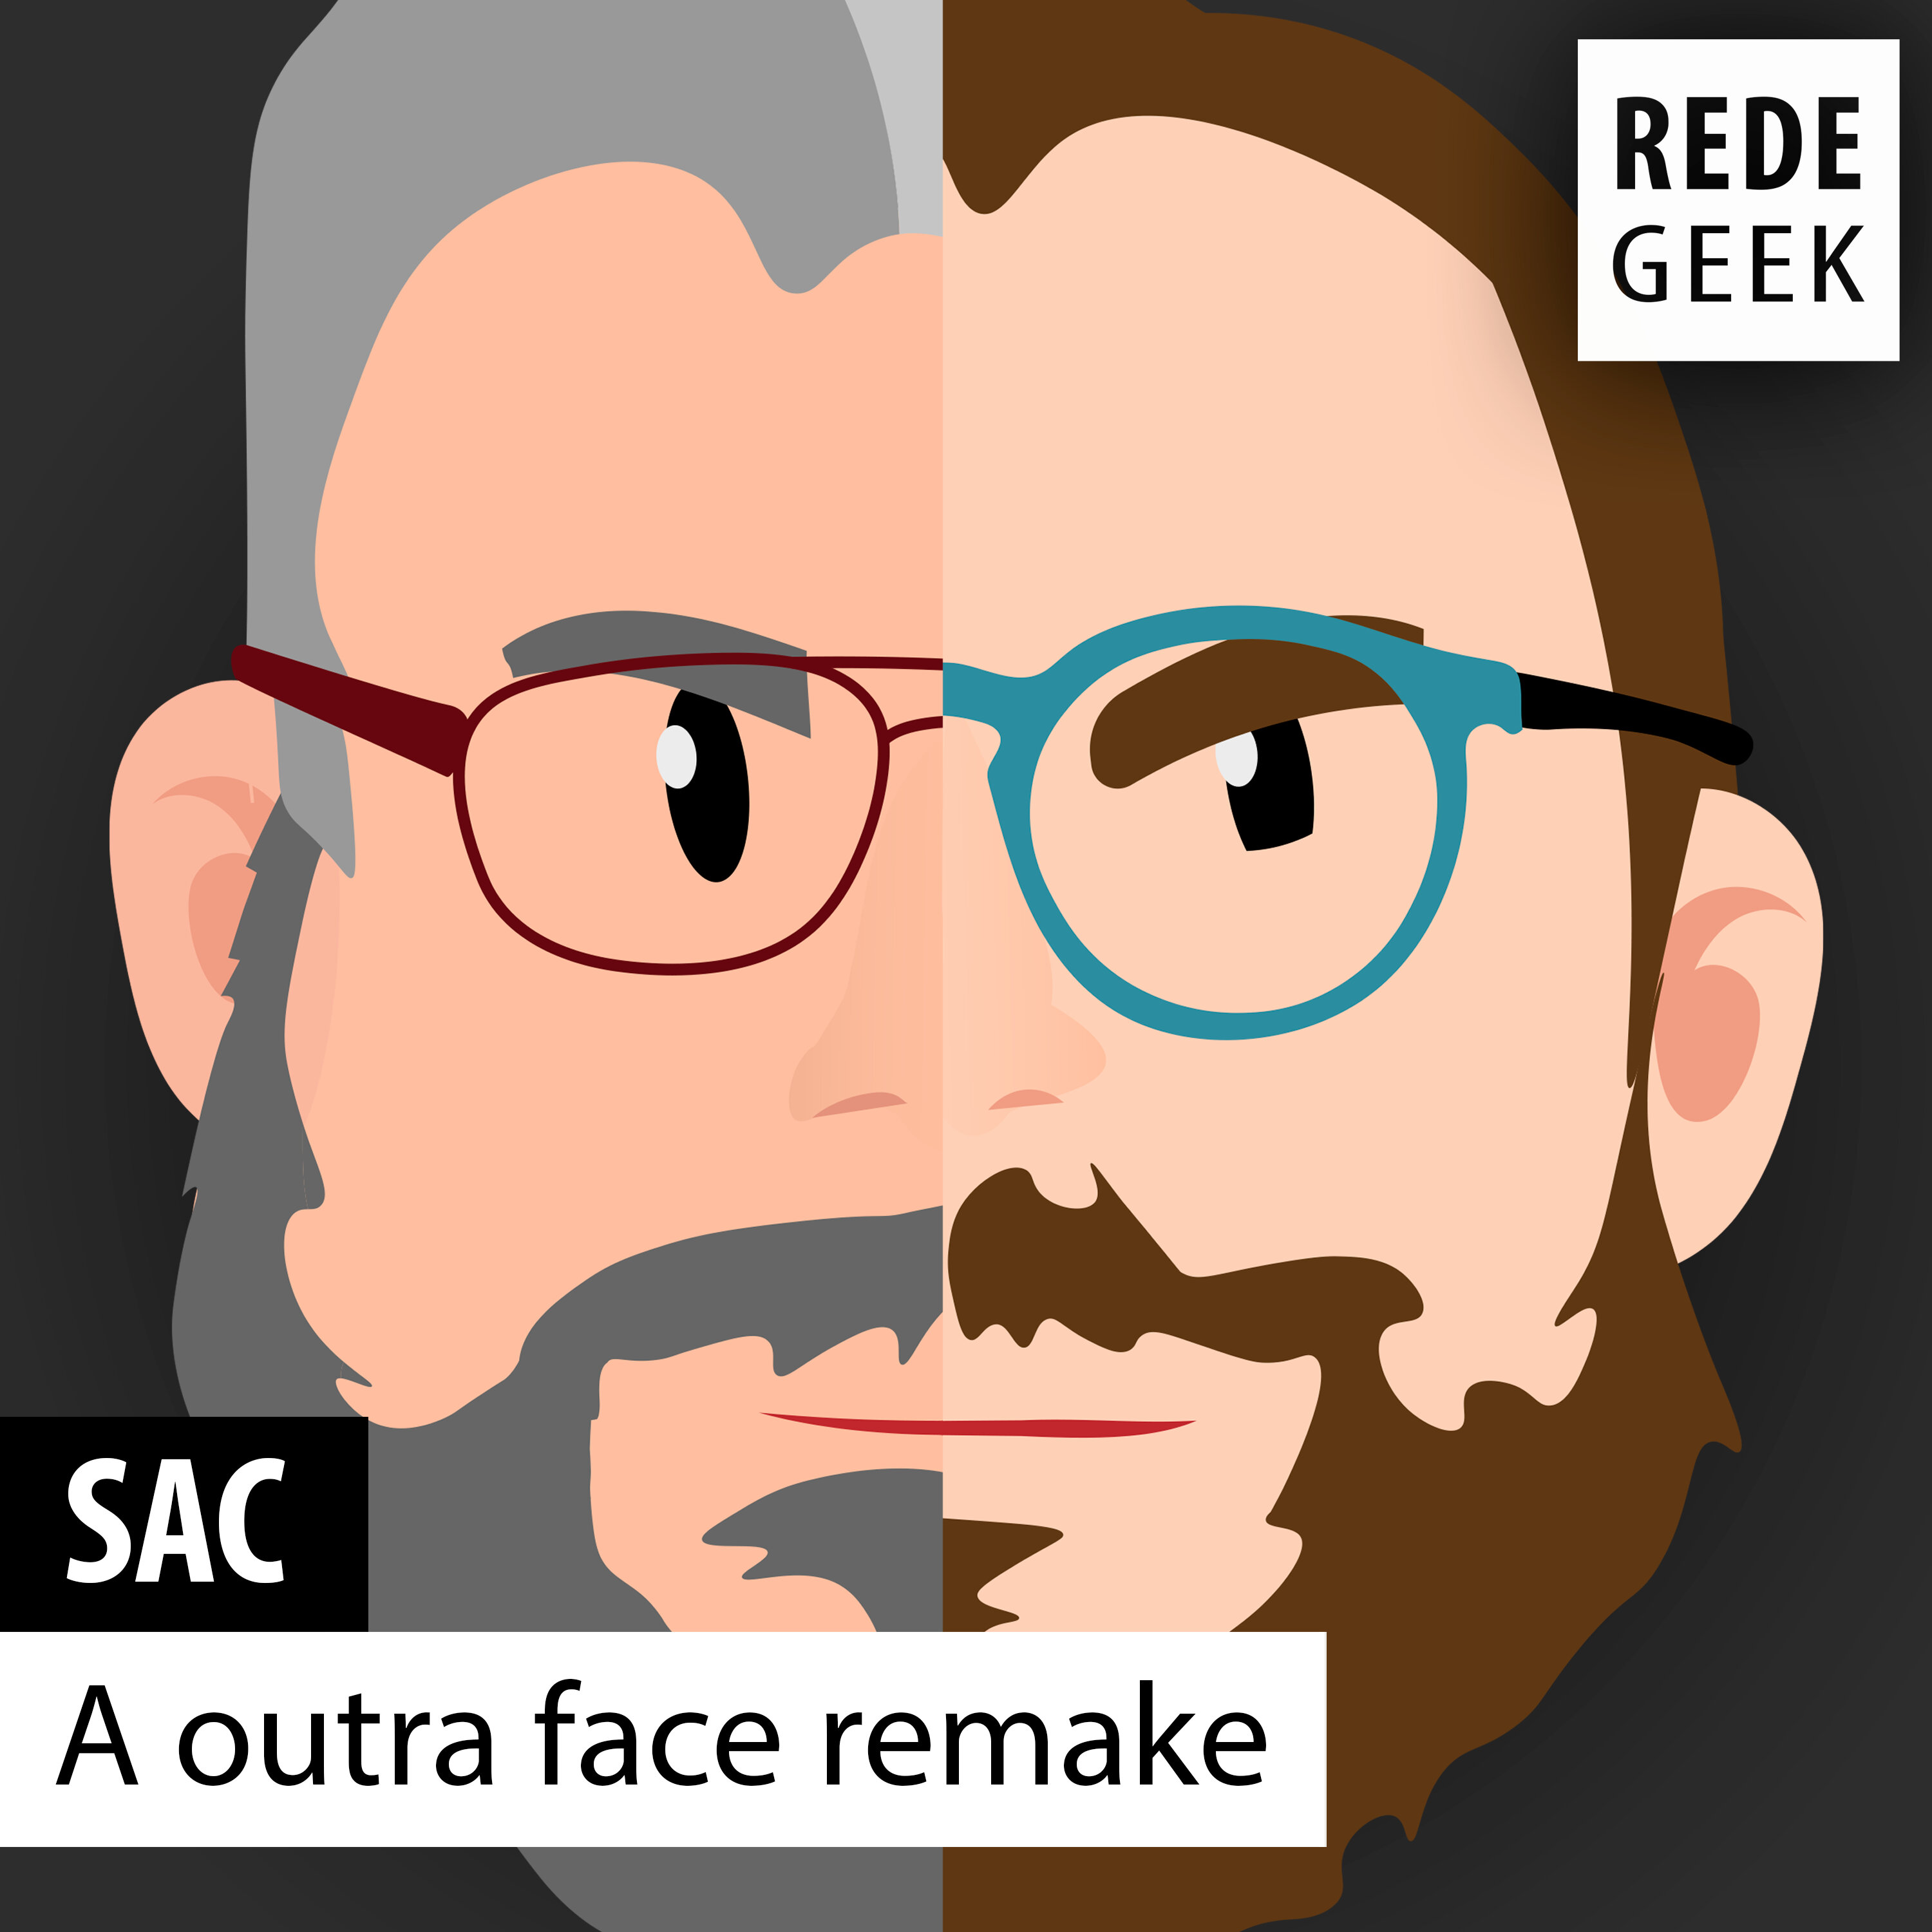 SAC - A outra face remake